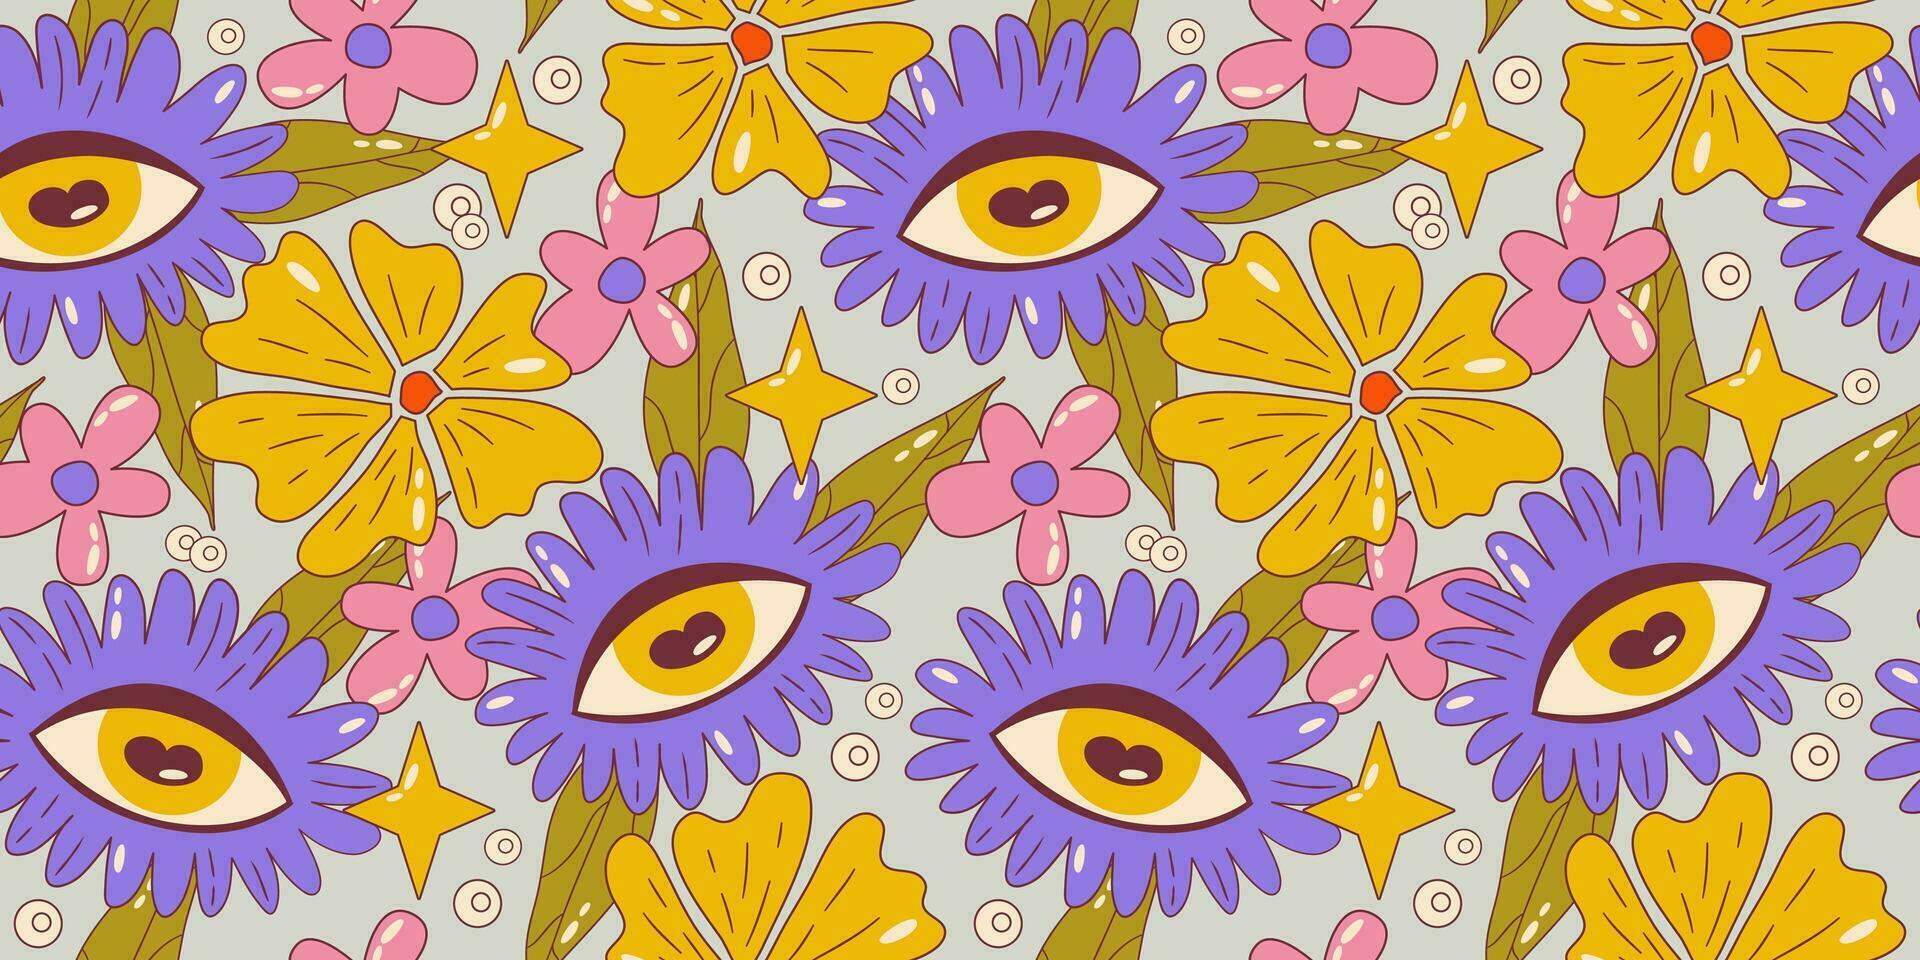 trippy häftig blomma sömlös mönster. retro häftig blommig mönster med daisy och öga. psychedelic tecknad serie design. sommar sömlös bakgrund. vektor illustration